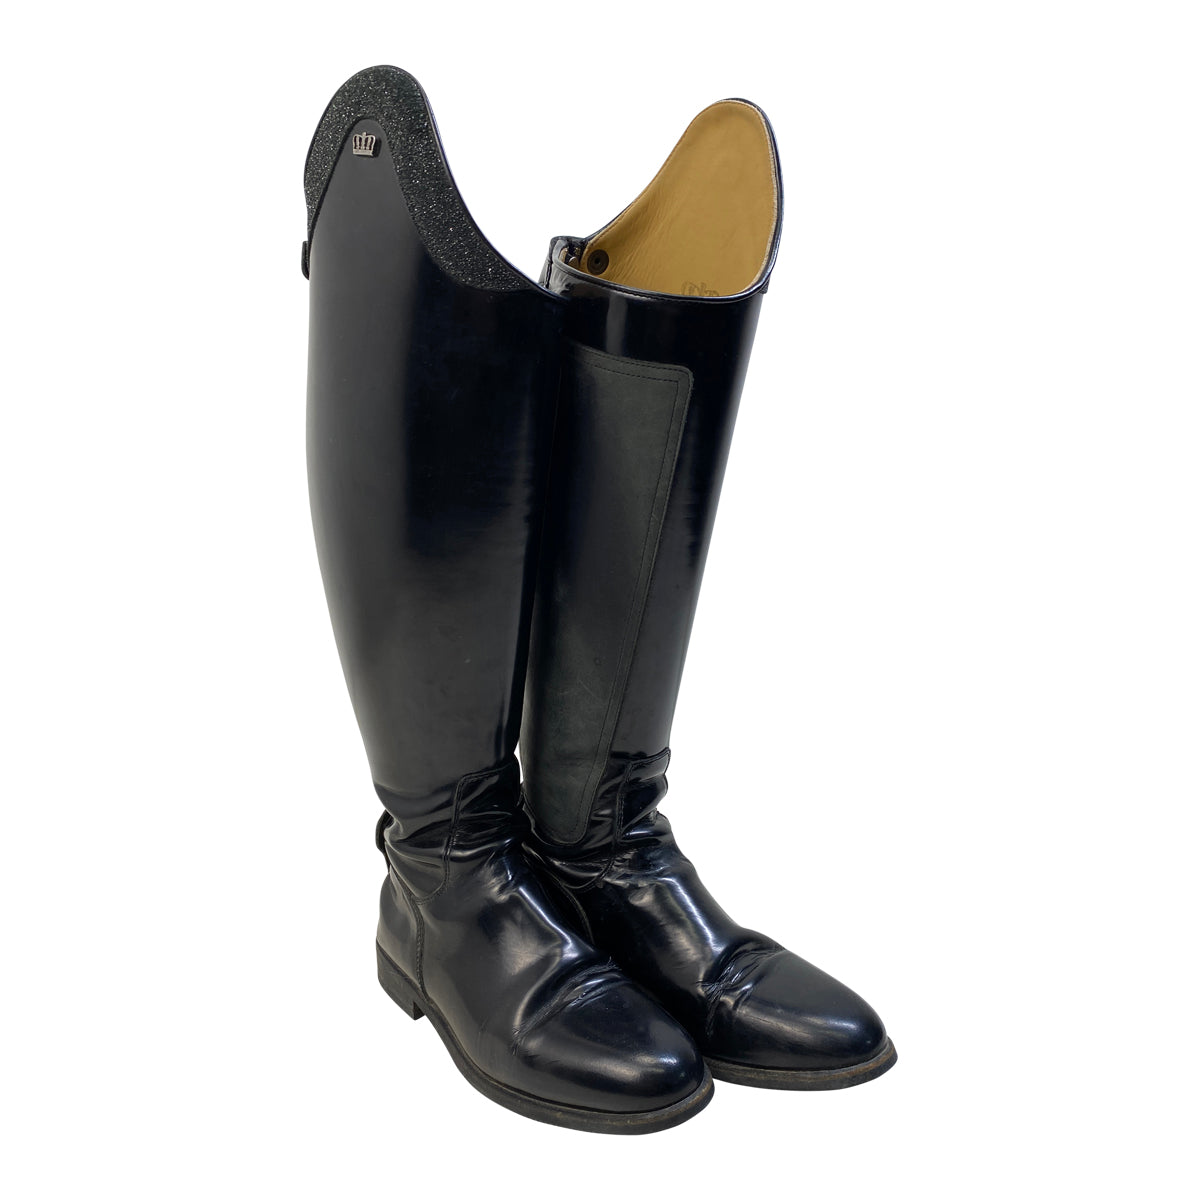 Kingsley 'Olbia 03' Jenny Top Boots in Uragano Black